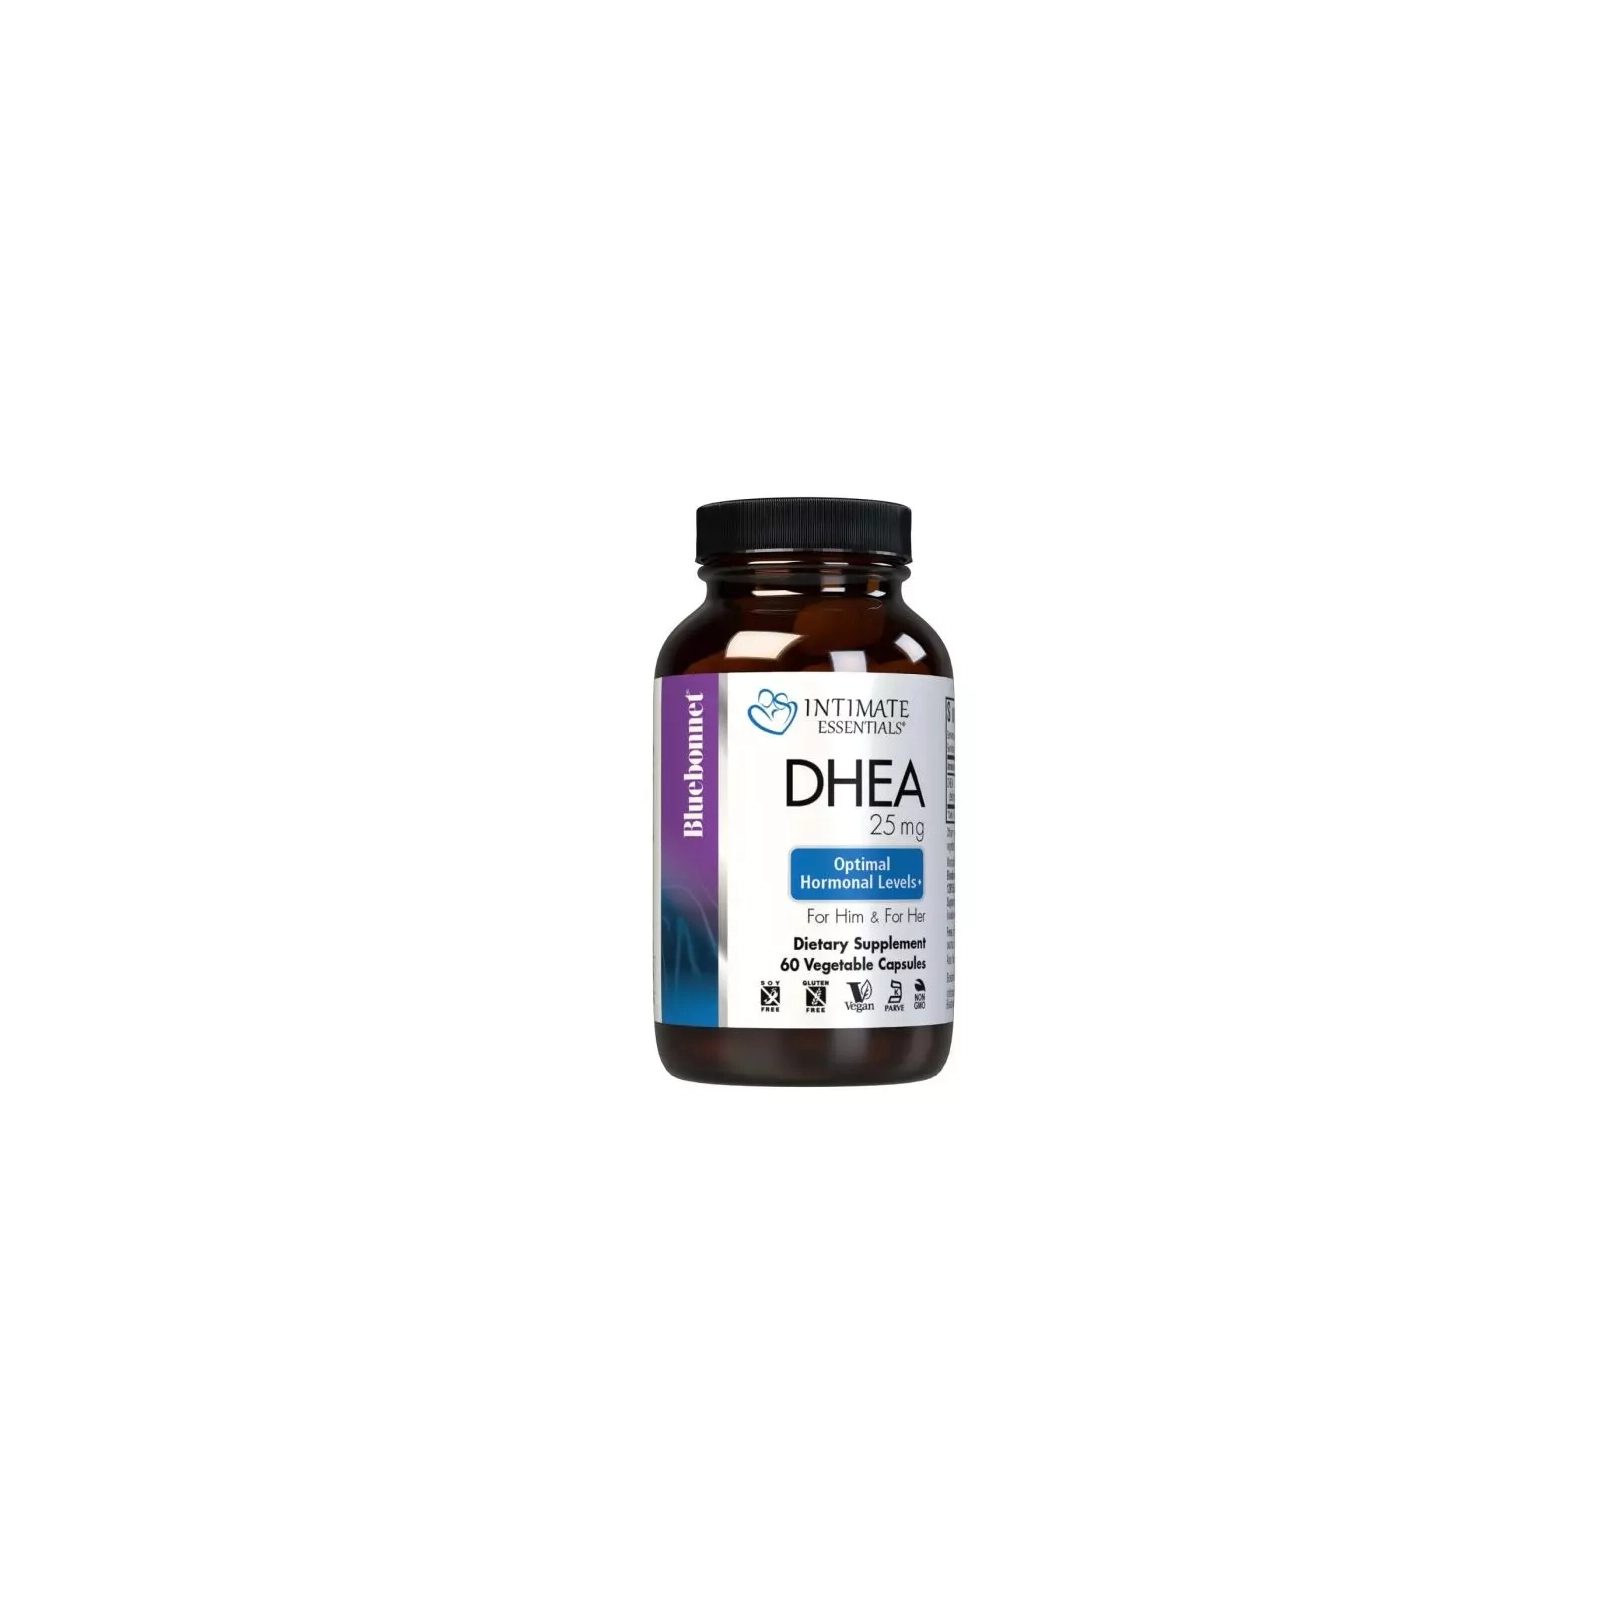 Витаминно-минеральный комплекс Bluebonnet Nutrition Дегидроэпиандростерон, 25 мг, Intimate Essenitals, DHEA, 60 вегетари (BLB4016) изображение 2